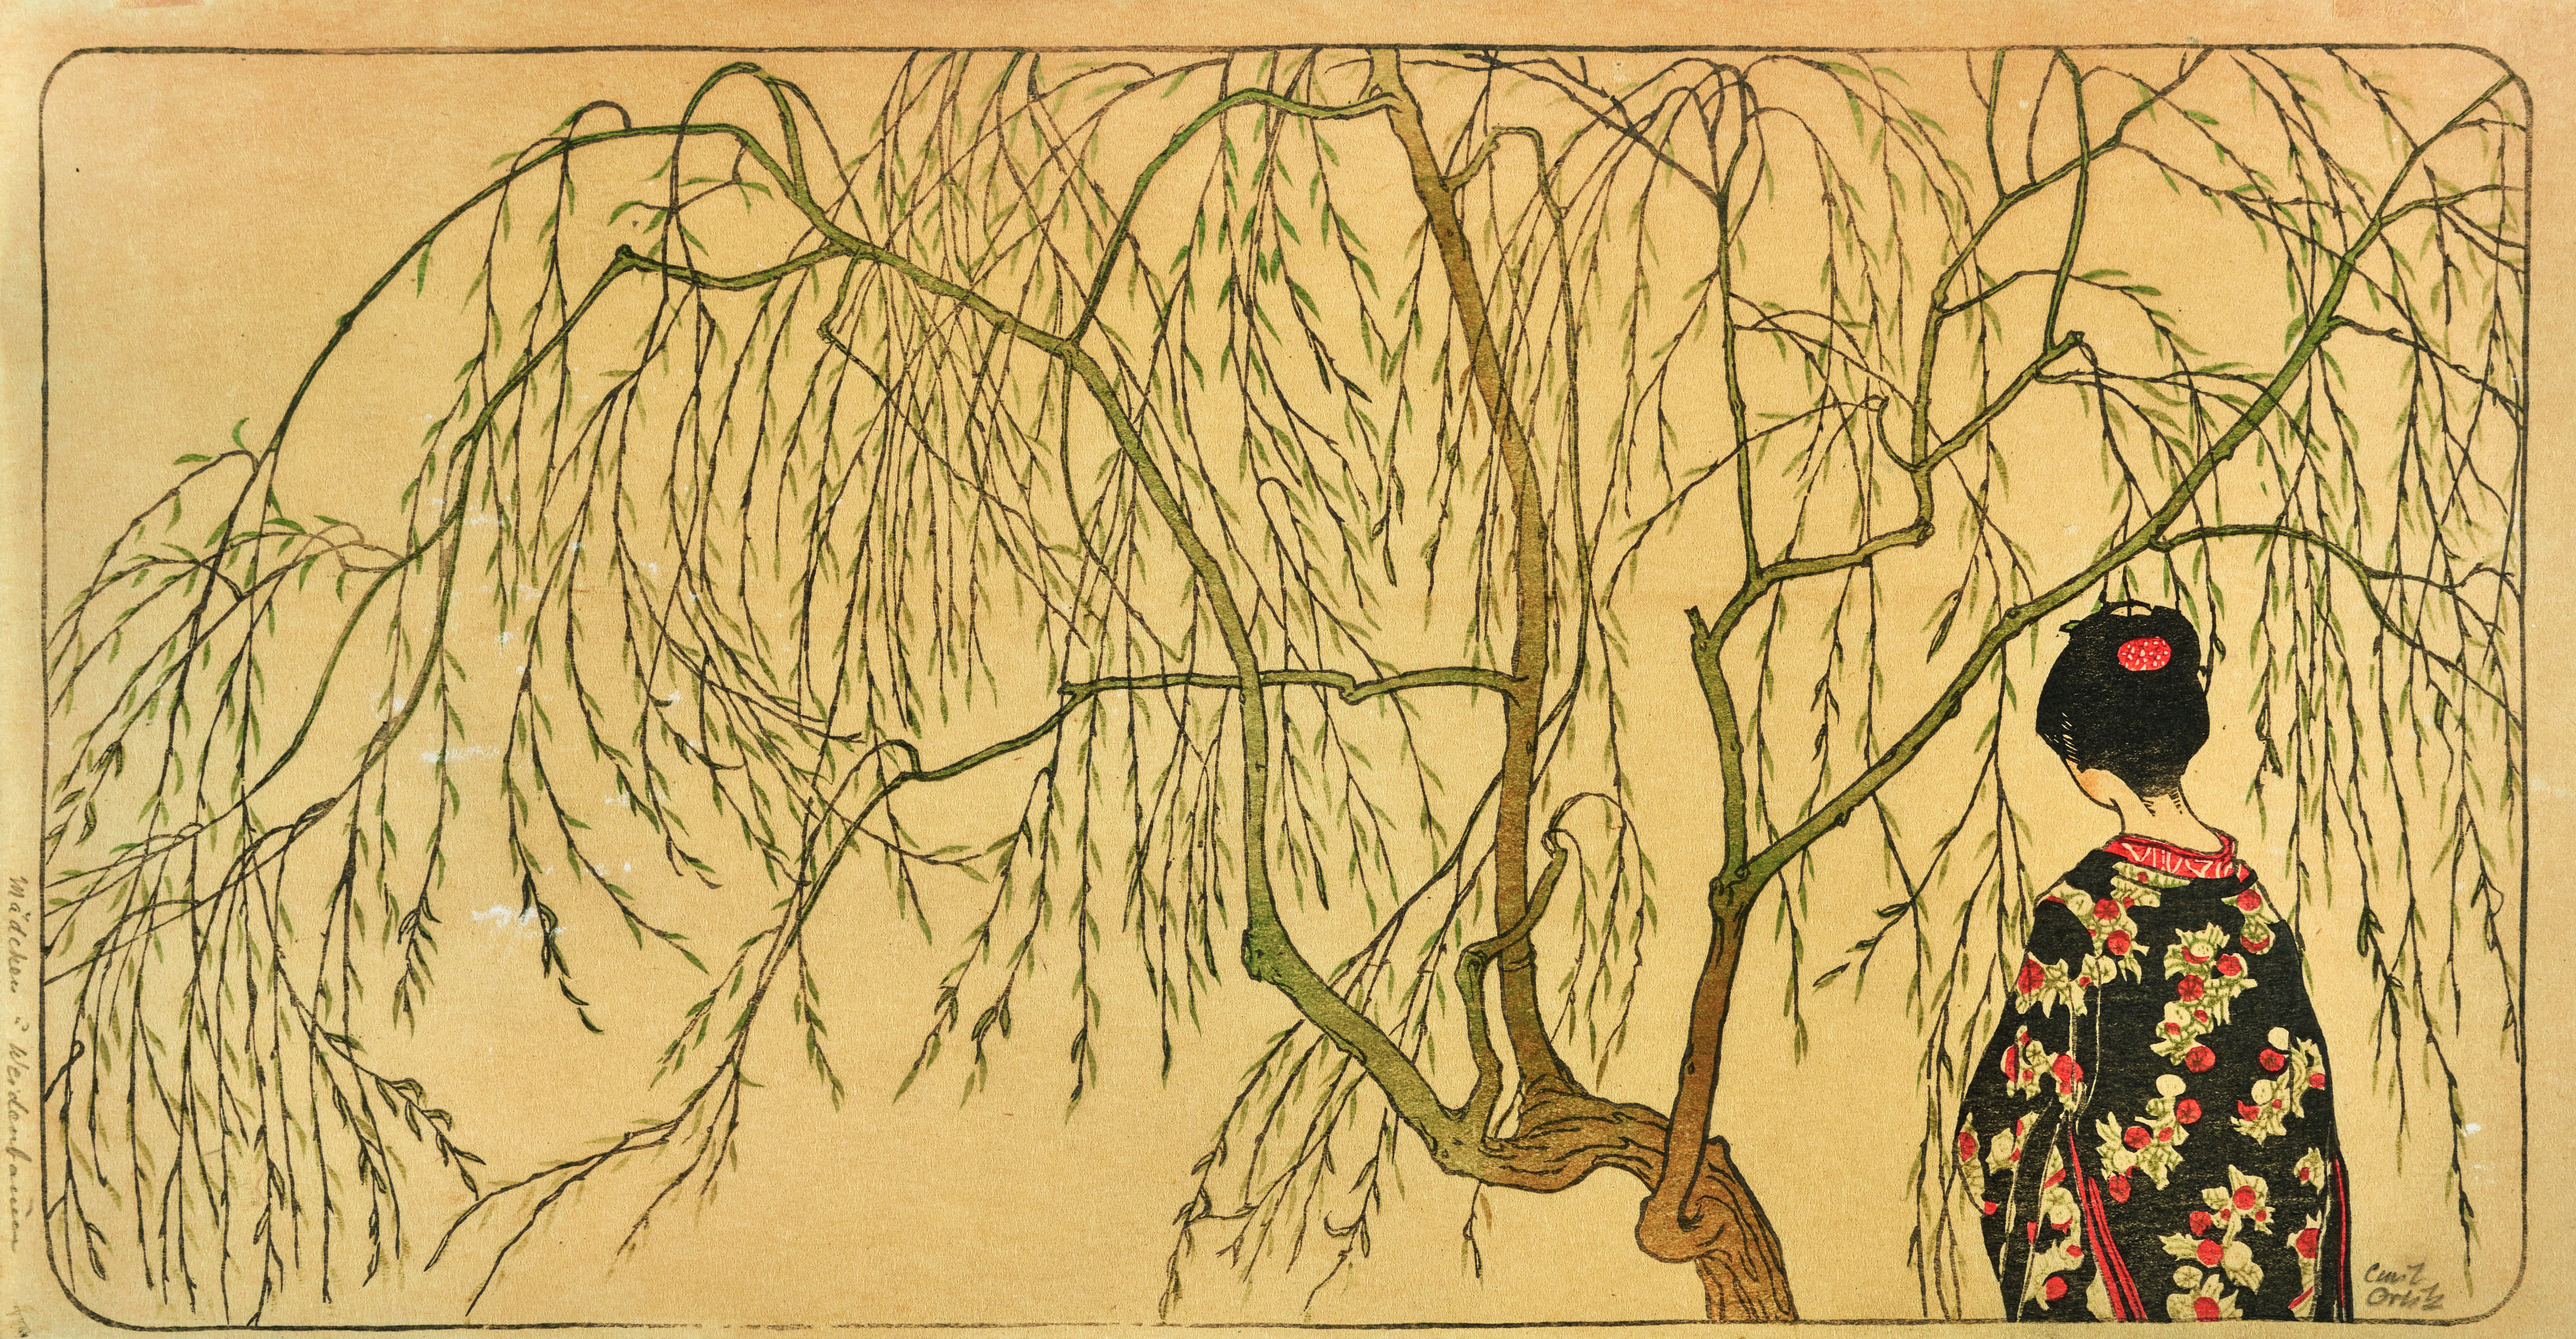 Emil Orlik
Japanese Girl under the Willow Tree, 1901